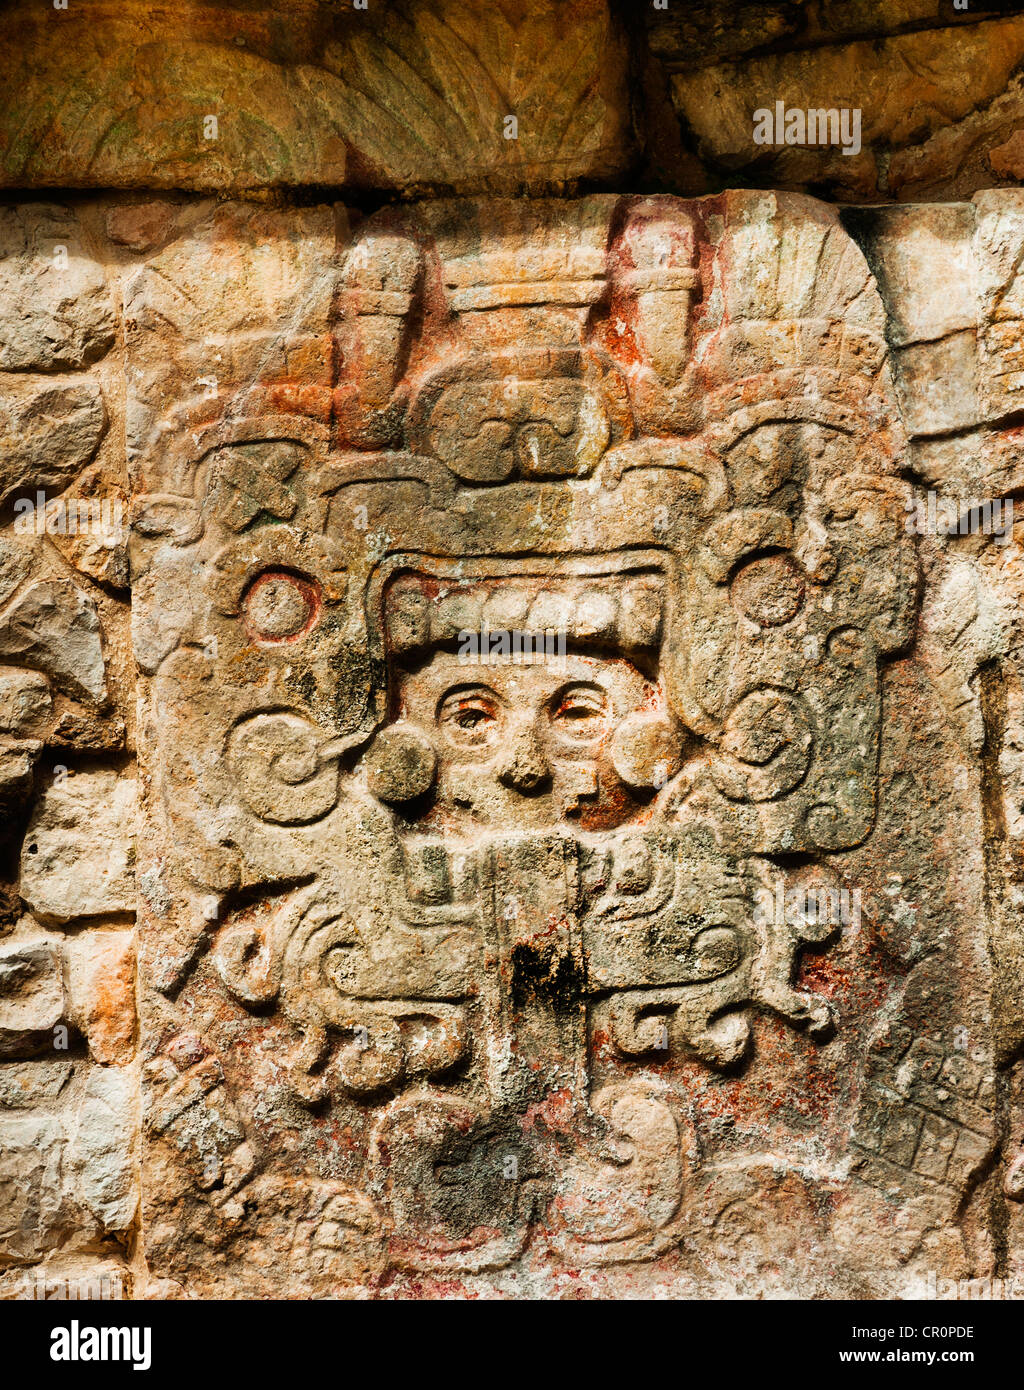 Le Mexique, du Yucatan, Chichen Itza, les ruines mayas, de sculptures Banque D'Images